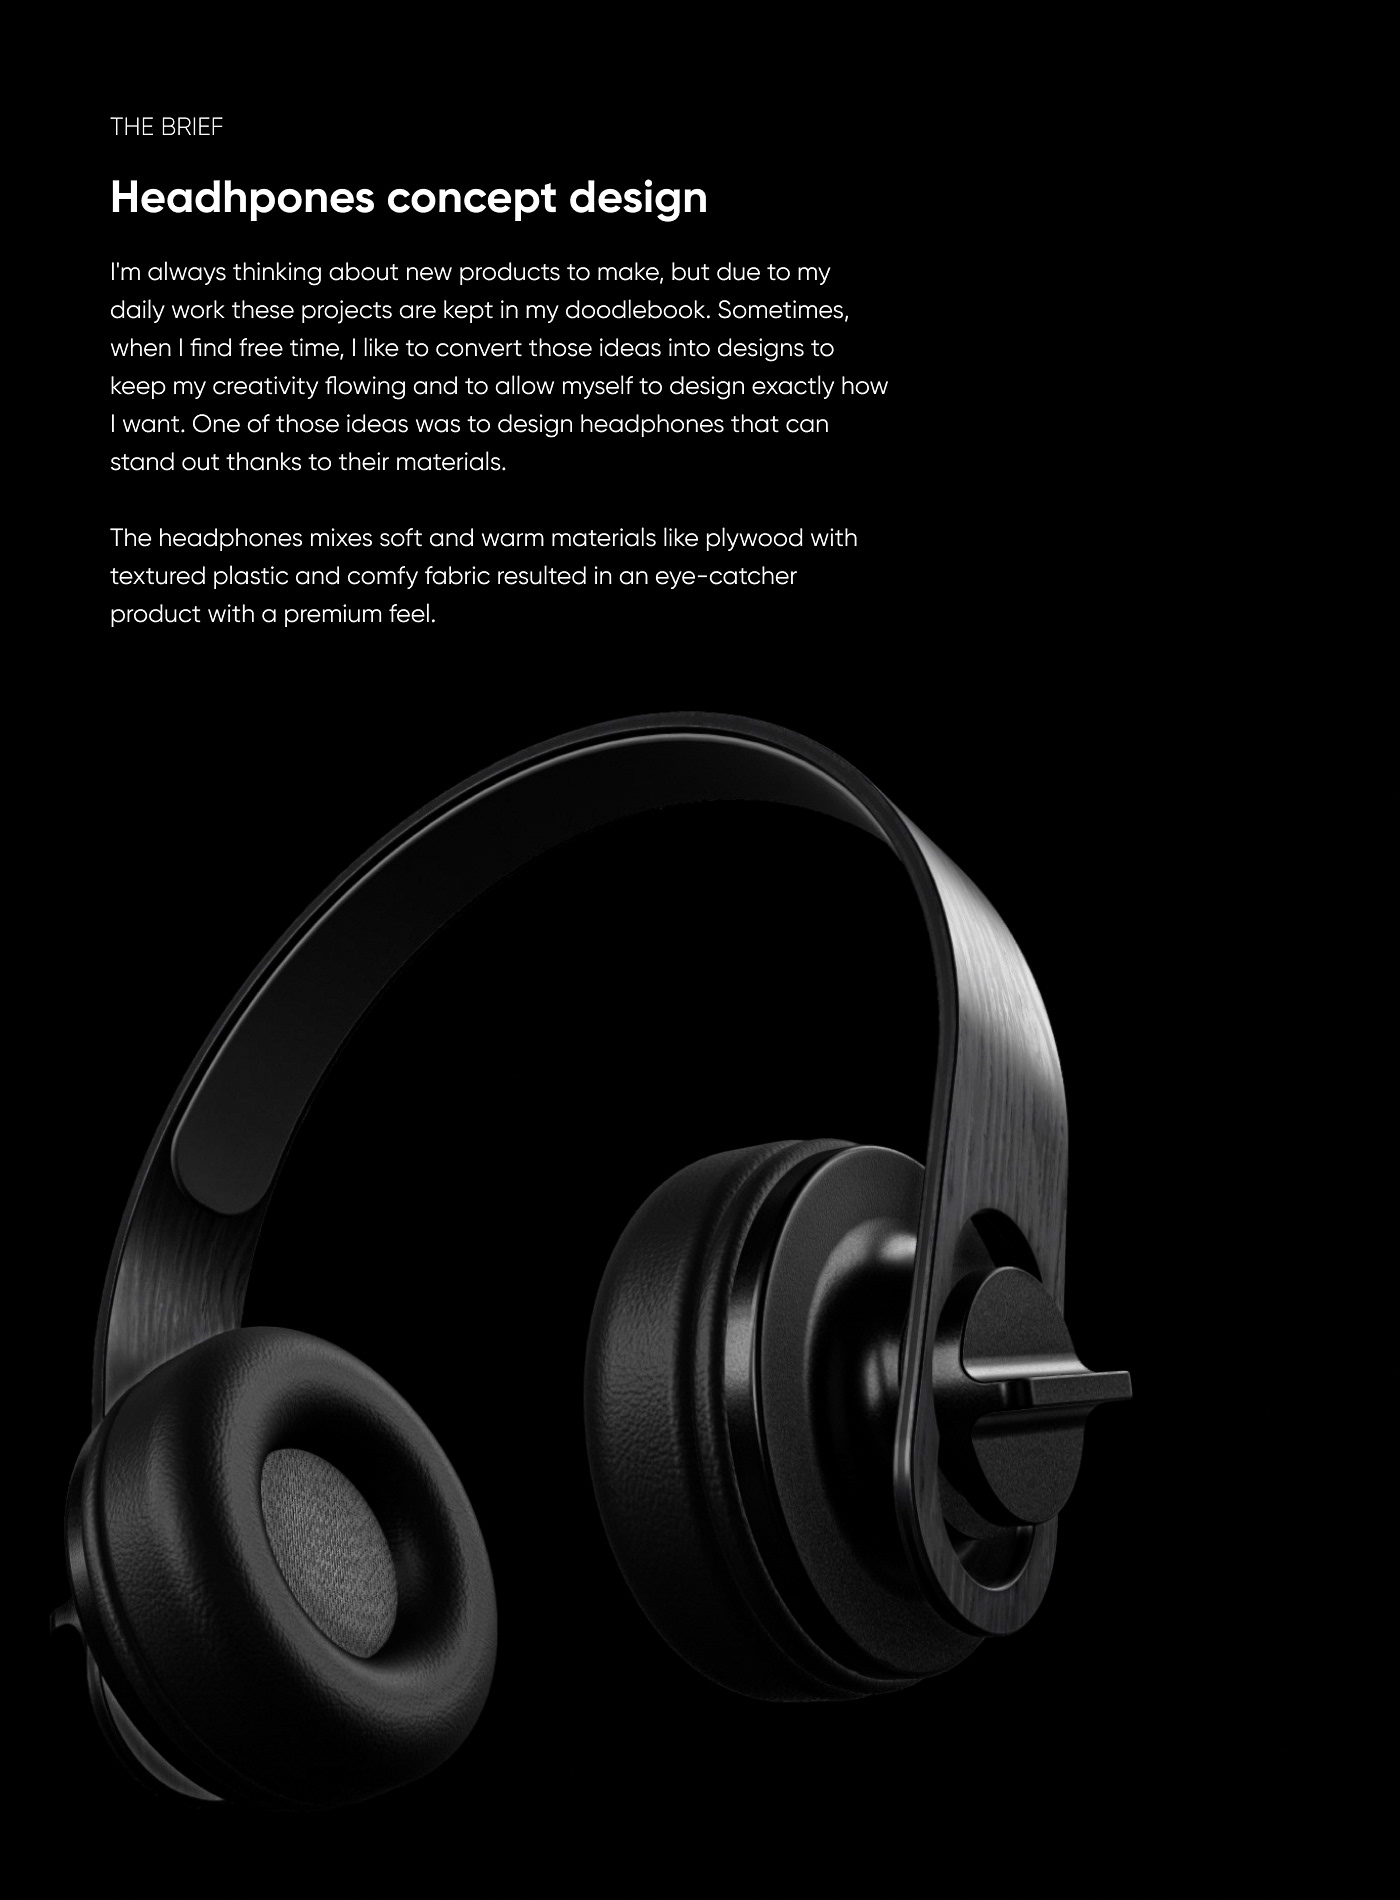 3D Rendering headphones industrial design  PHYSICAL PRODUCT DESIGN product product design  product development rendering concept design plywood